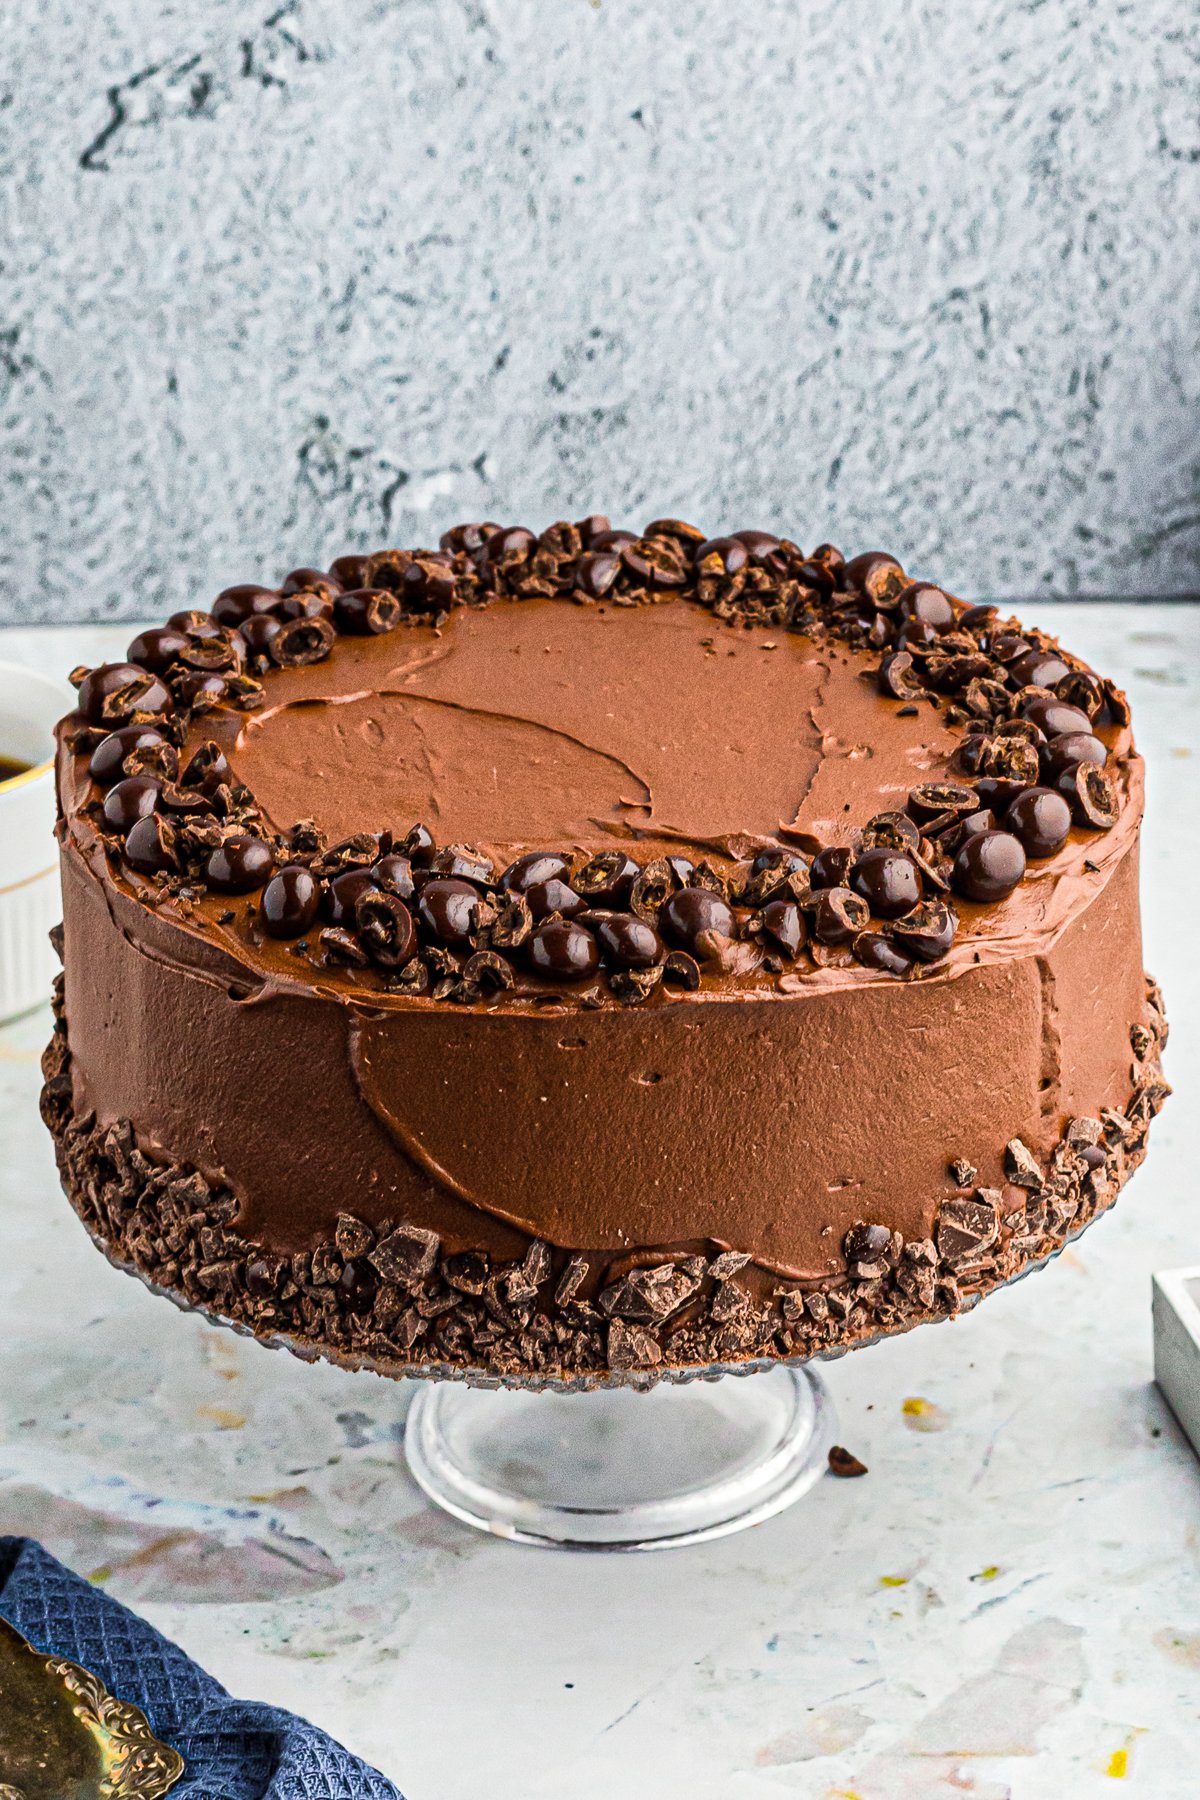 Finished Chocolate Espresso Cake on cake stand.